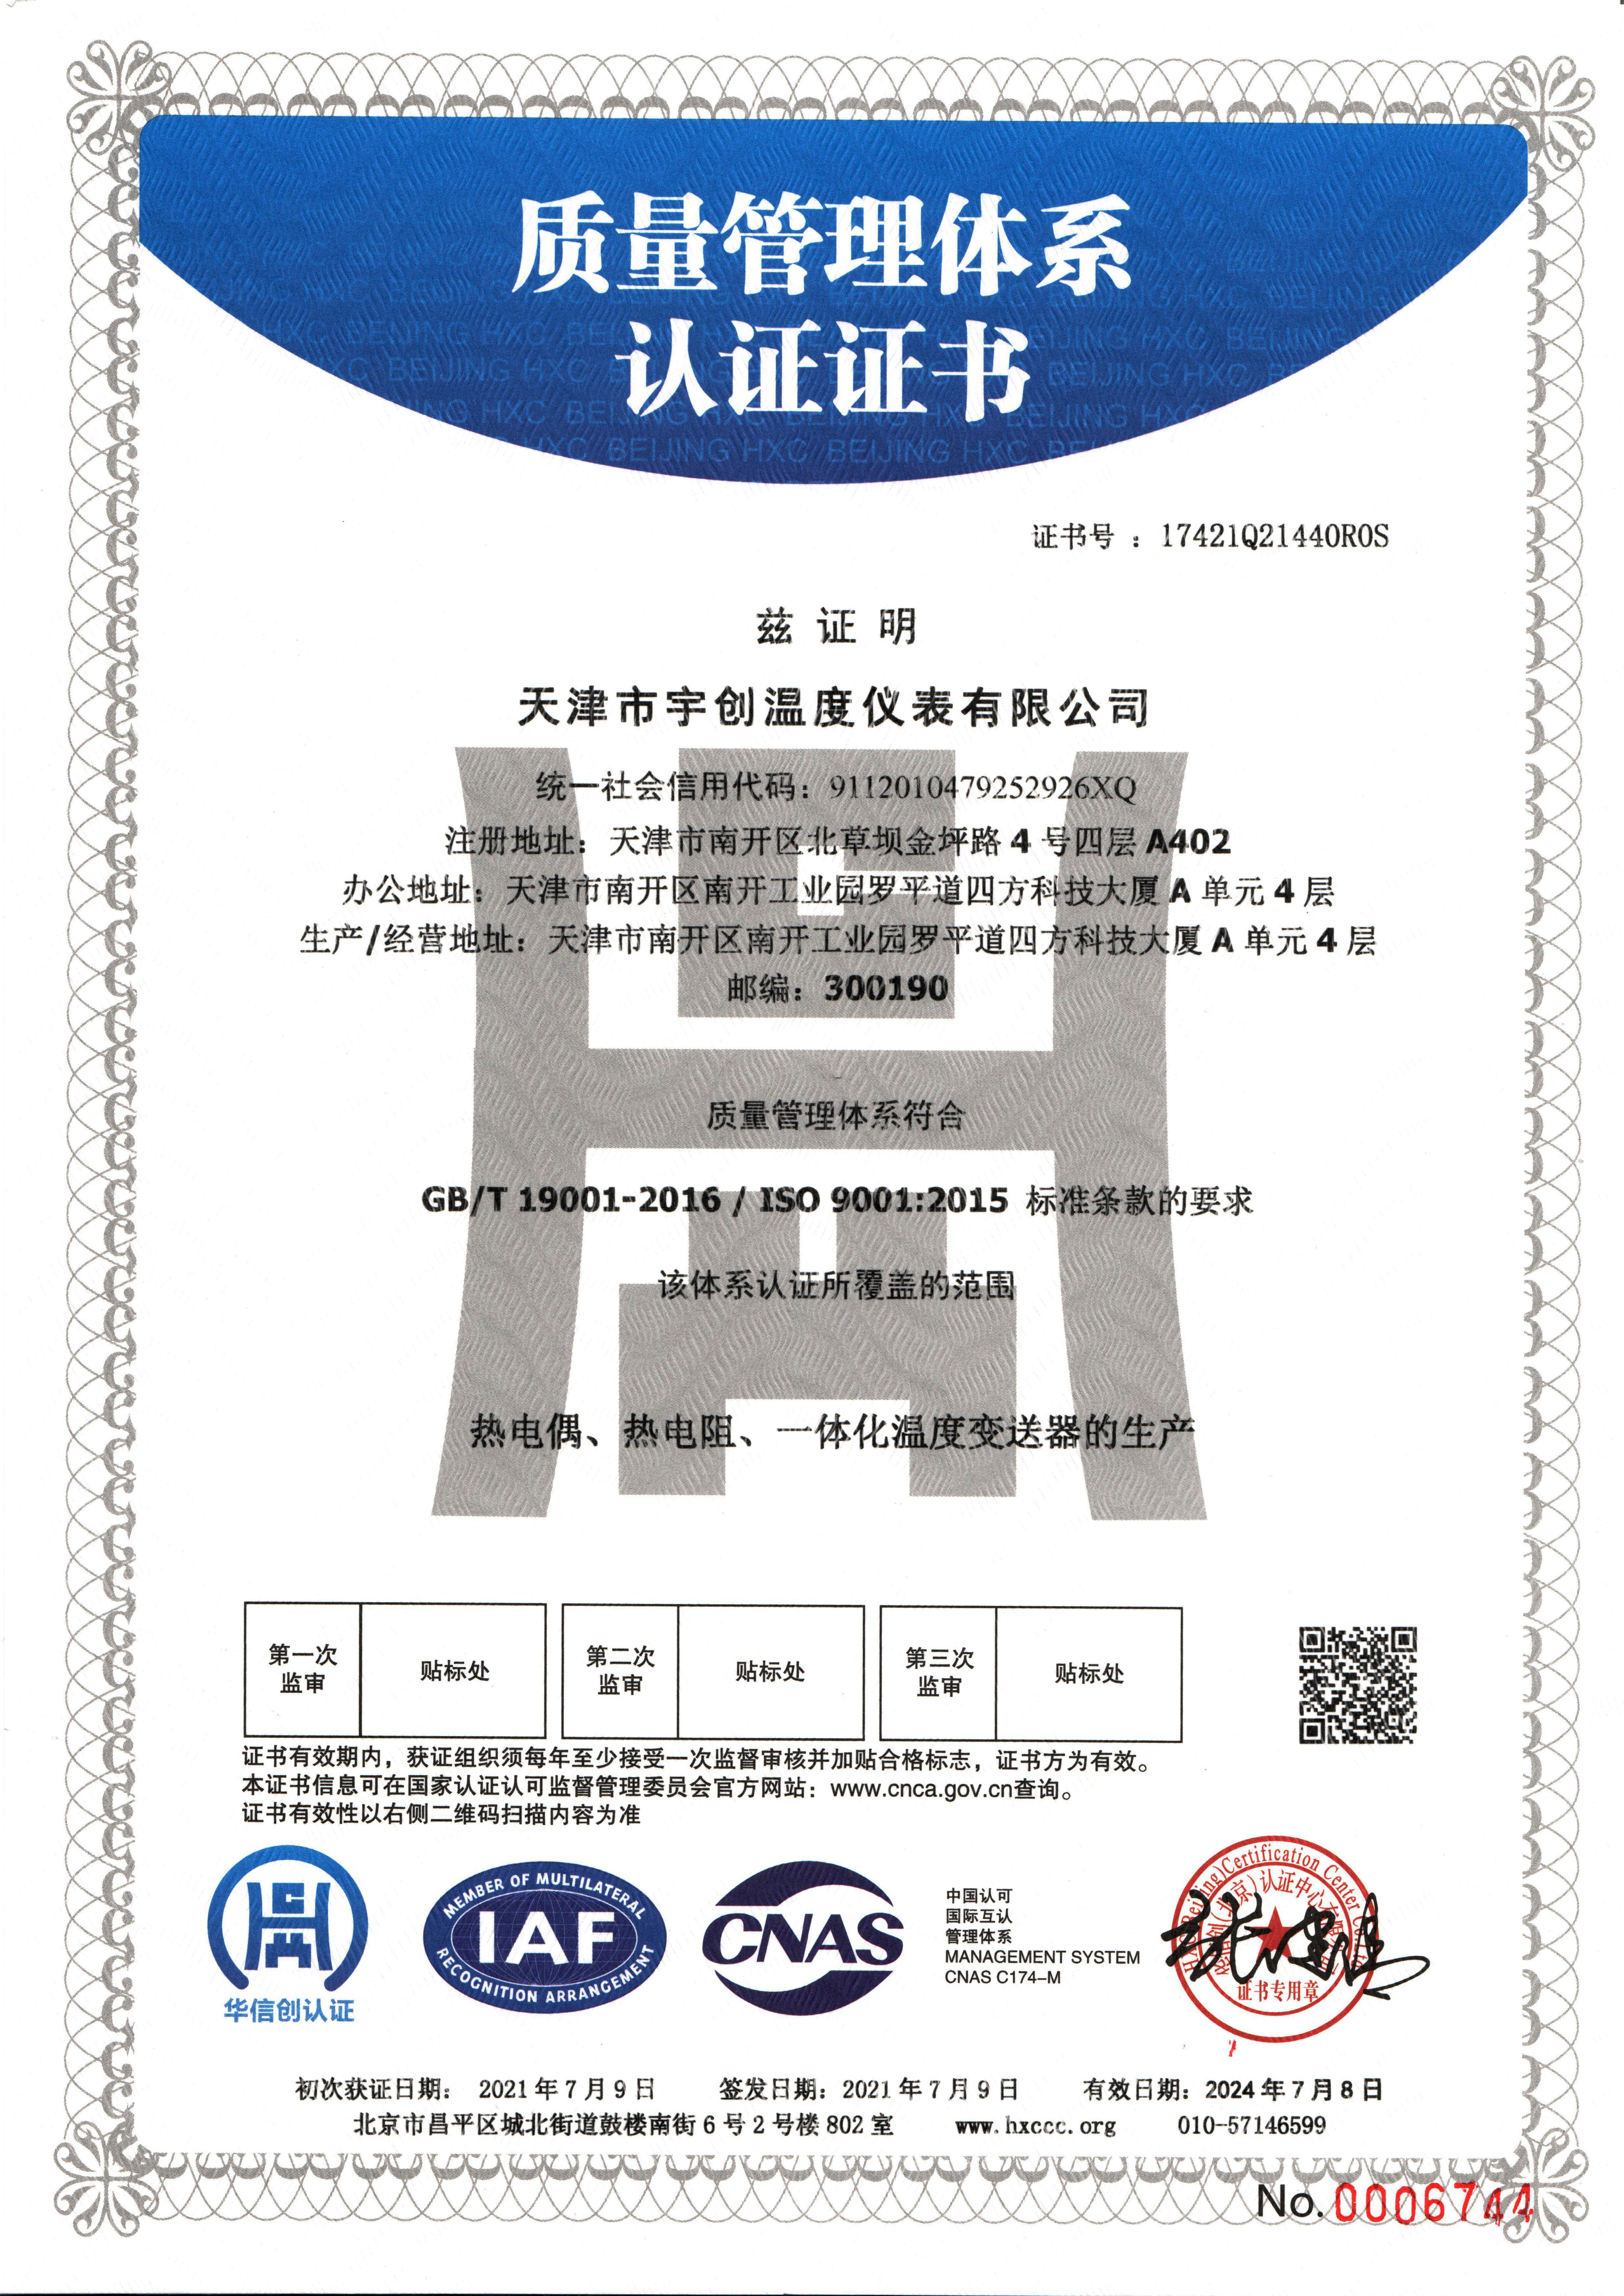 03-9001認證中文